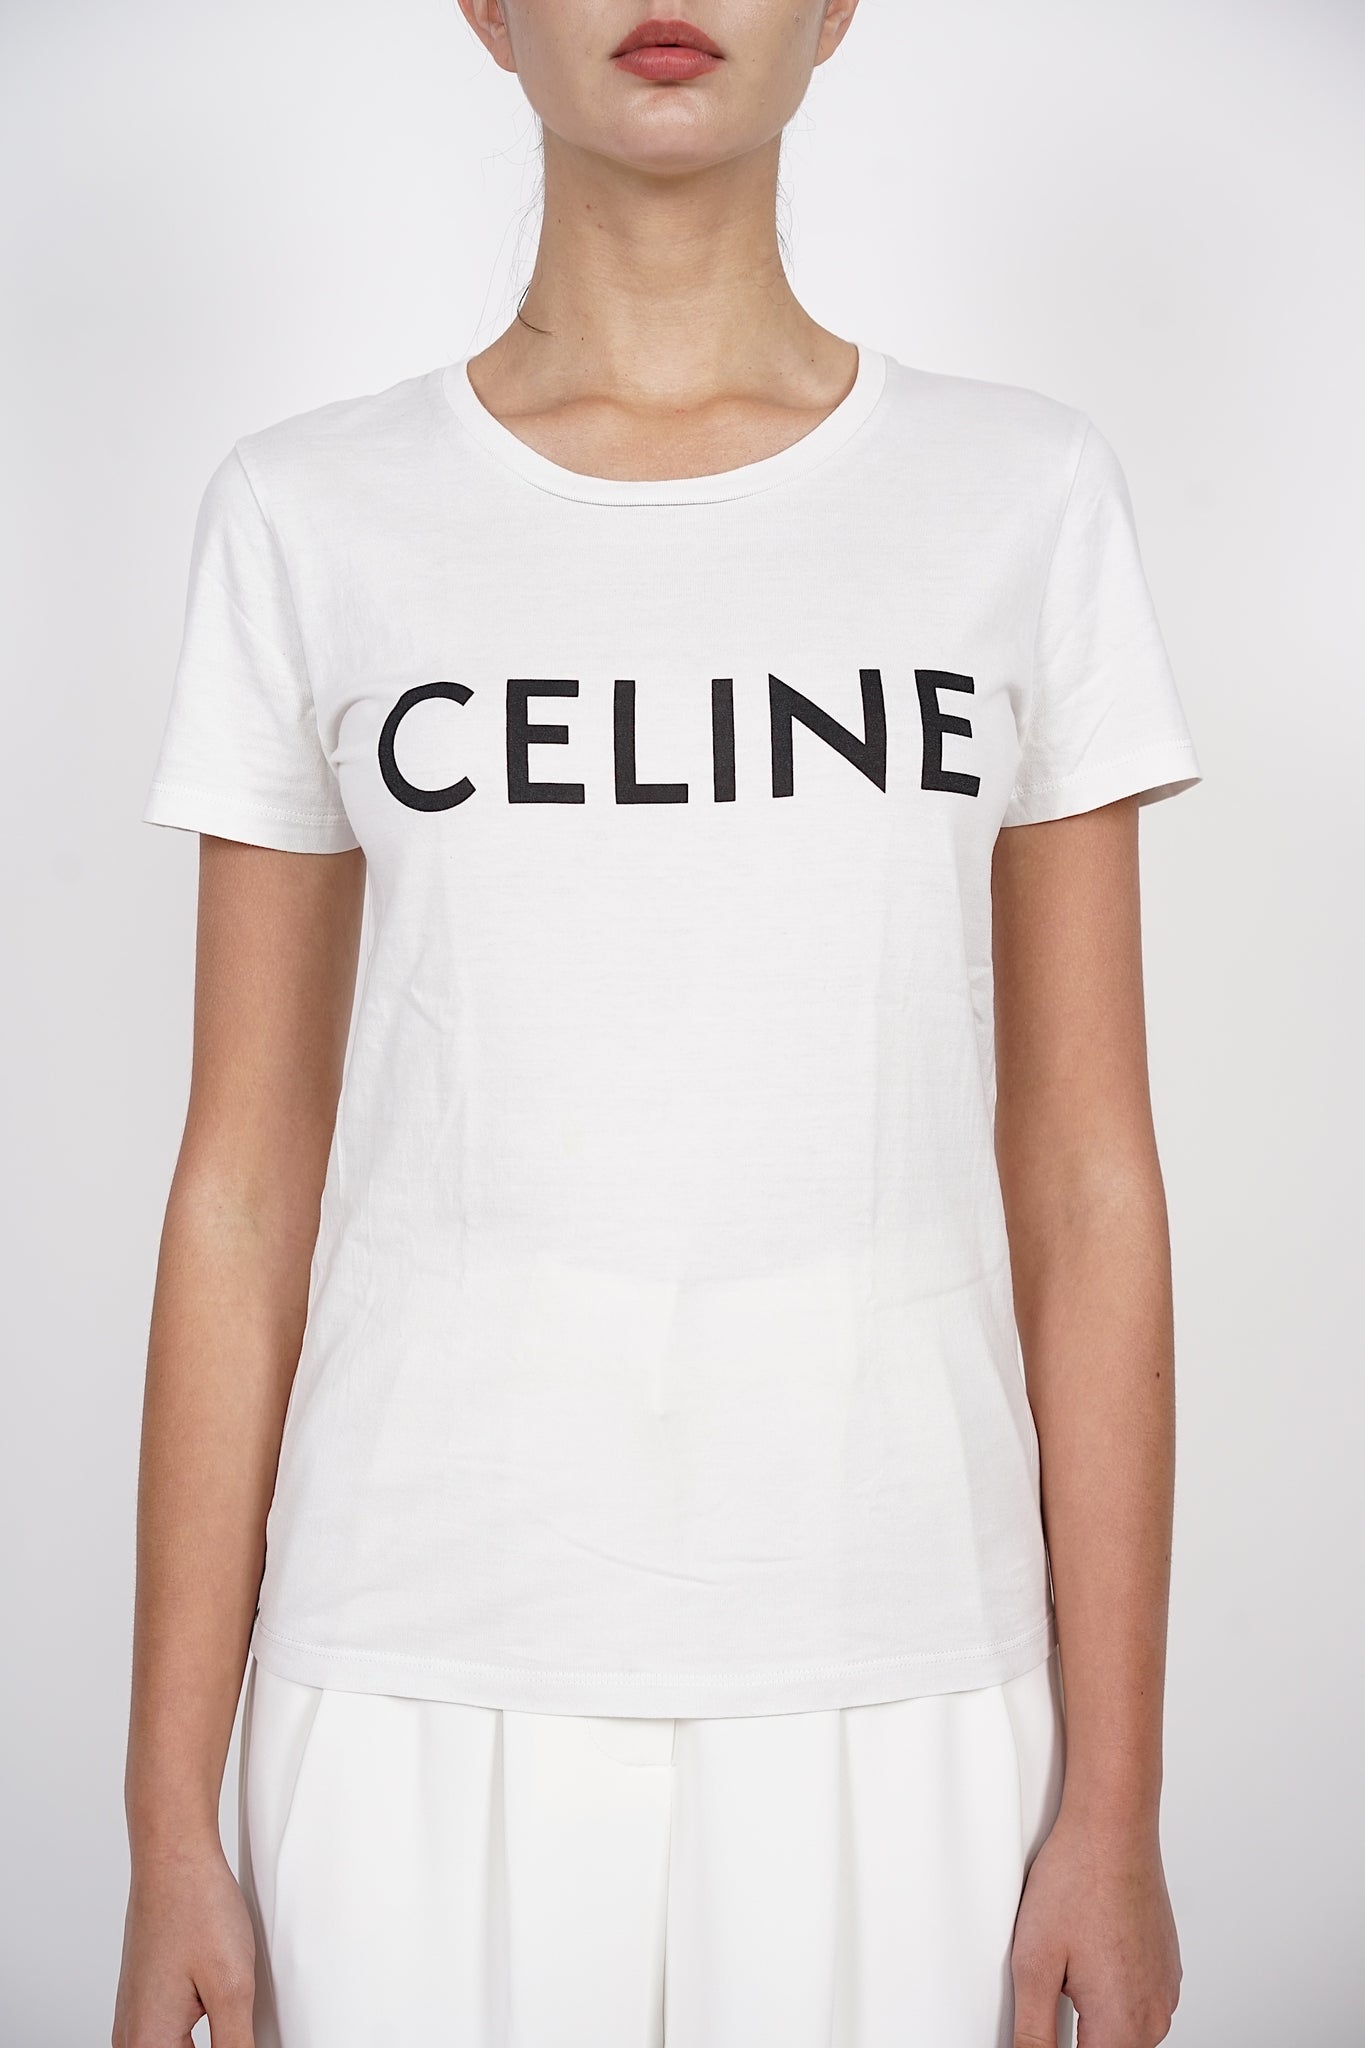 Celine Tee in Monochrome